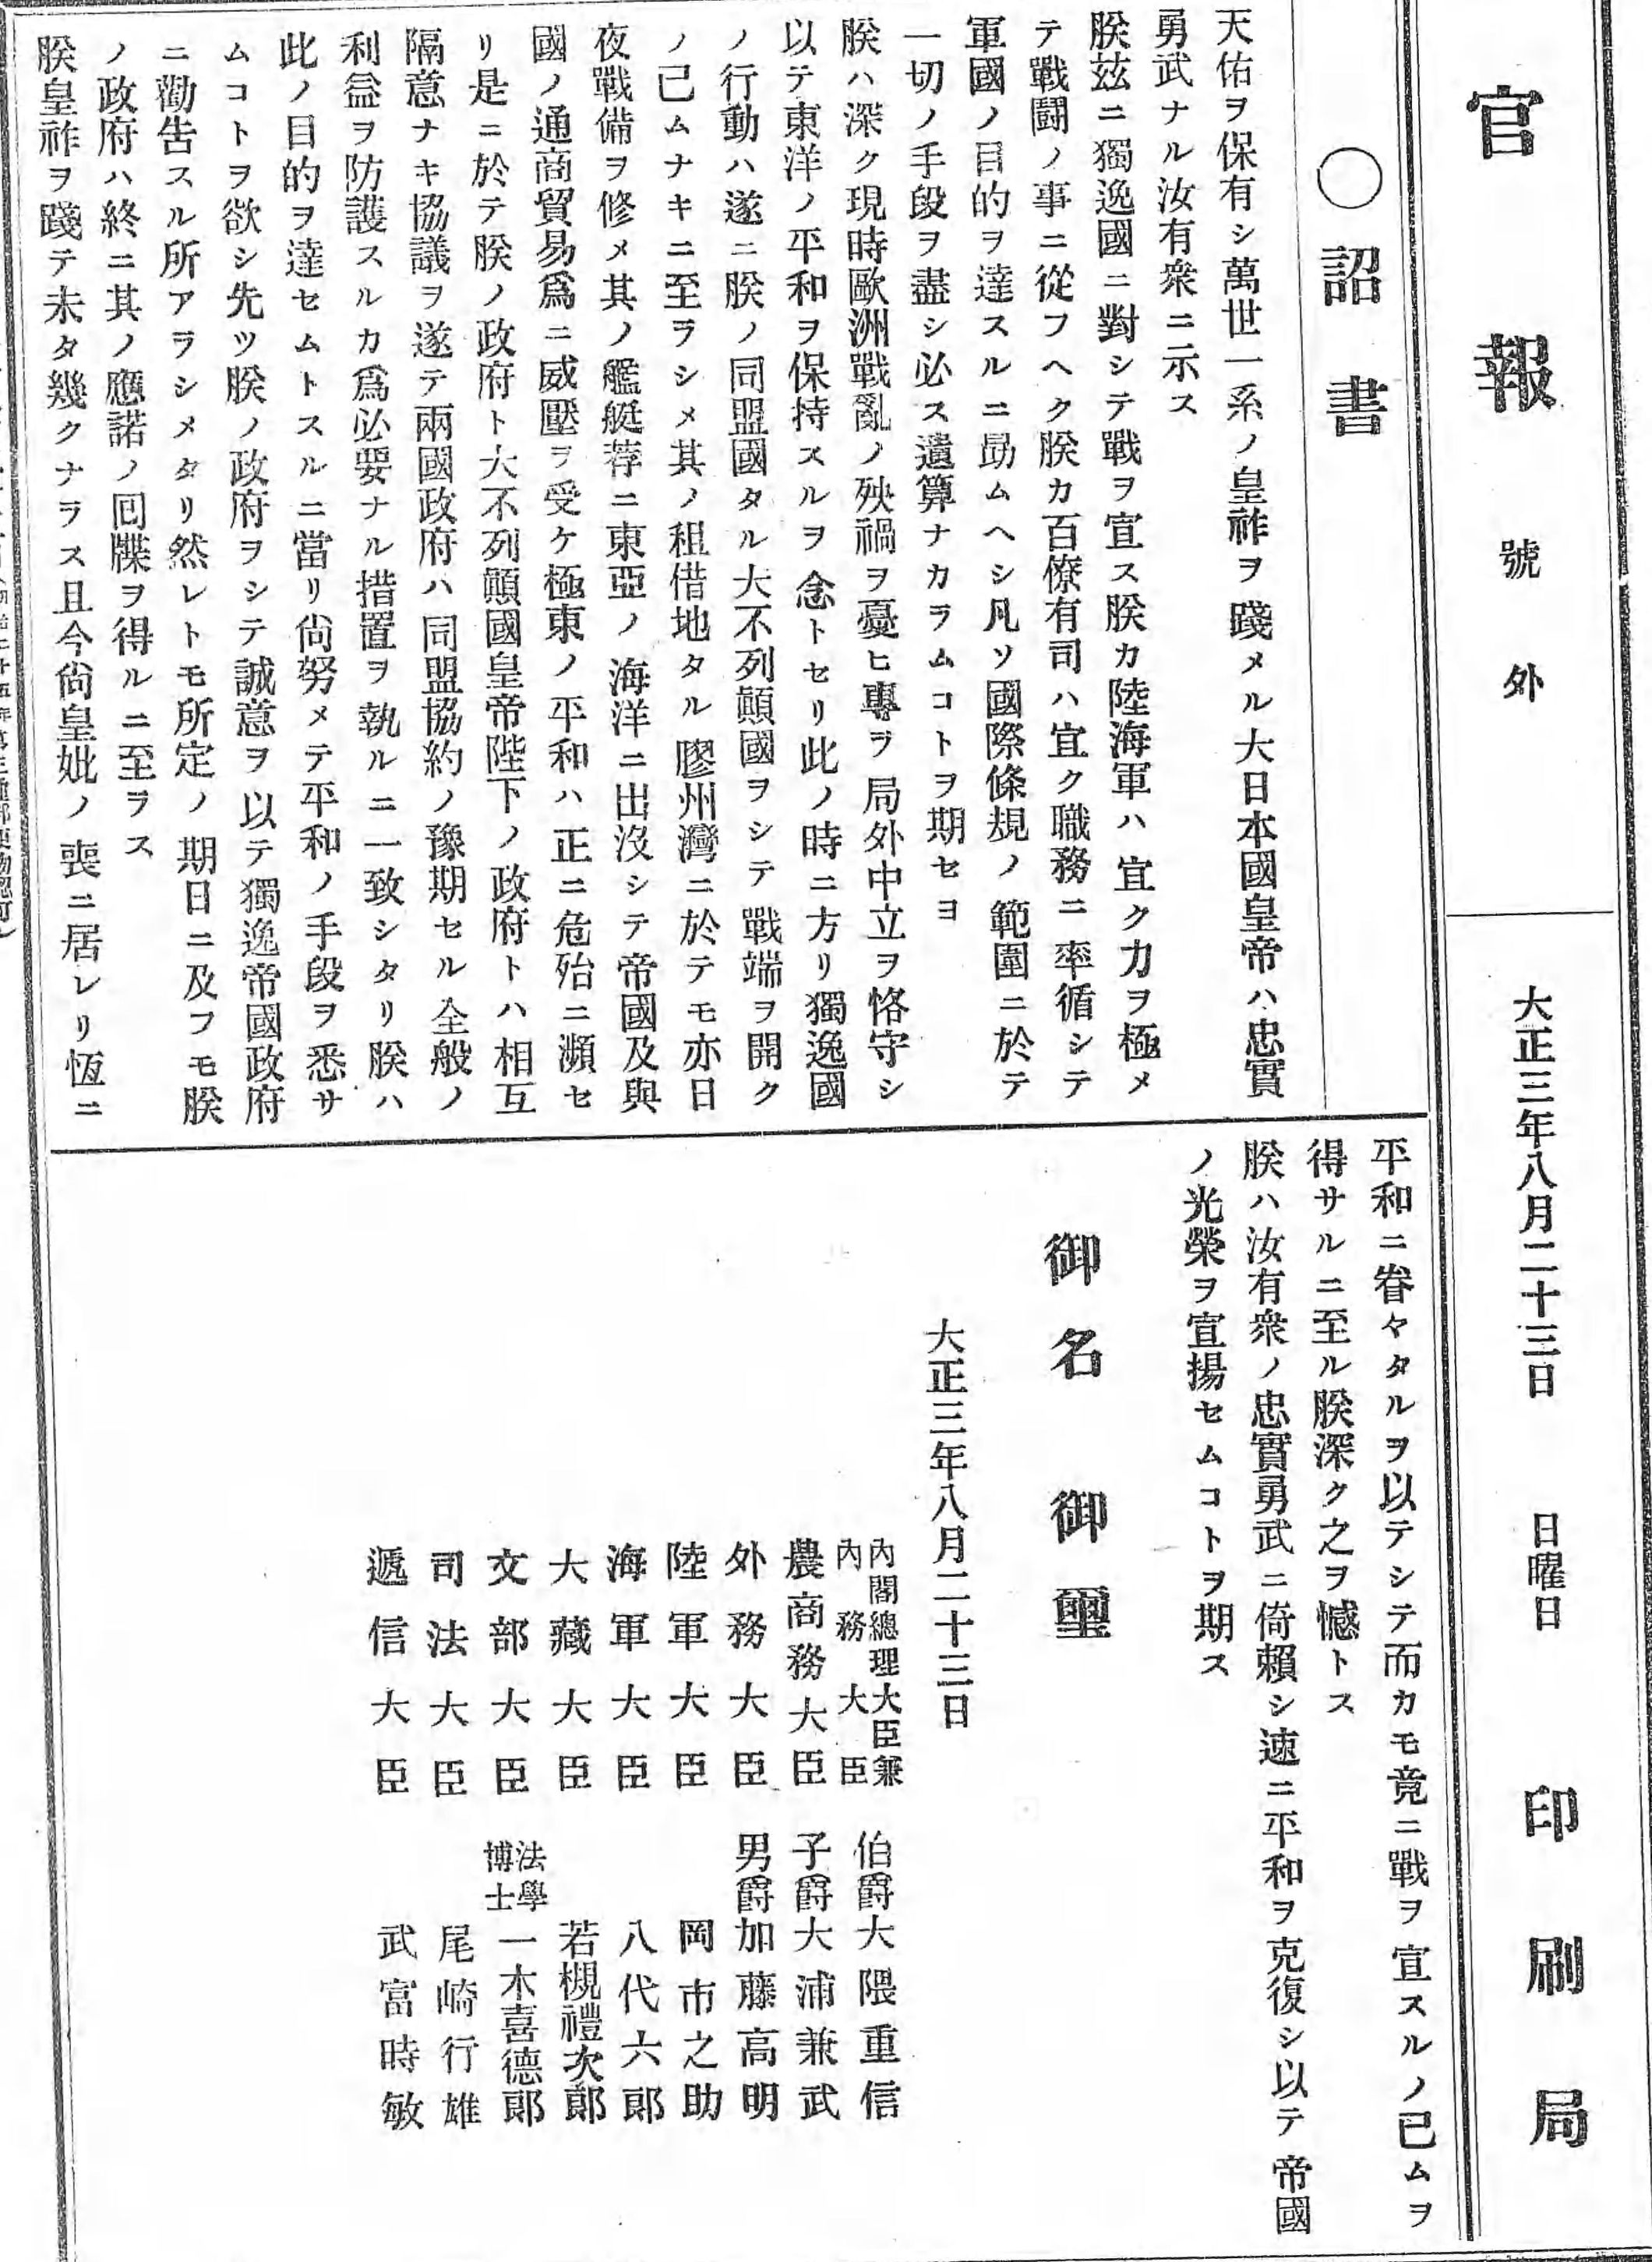 《臺灣日日新報》的國際新聞－以一戰前的山東半島為例